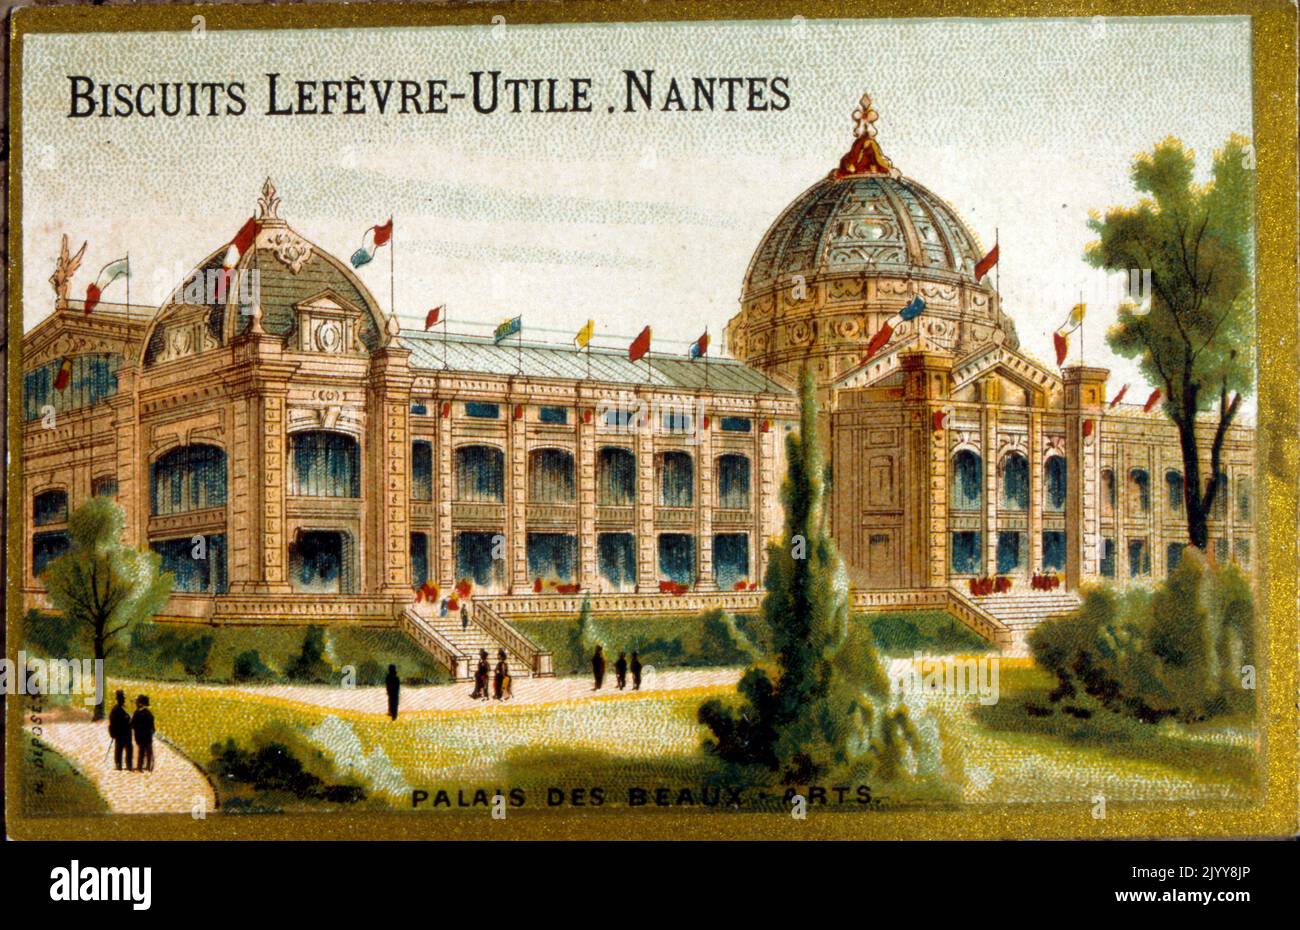 Farbige Illustration zur Ausstellung des Palastes der Schönen Künste aus dem Jahr 1889, produziert von der Keksfabrik Lefevre in Nantes. Stockfoto